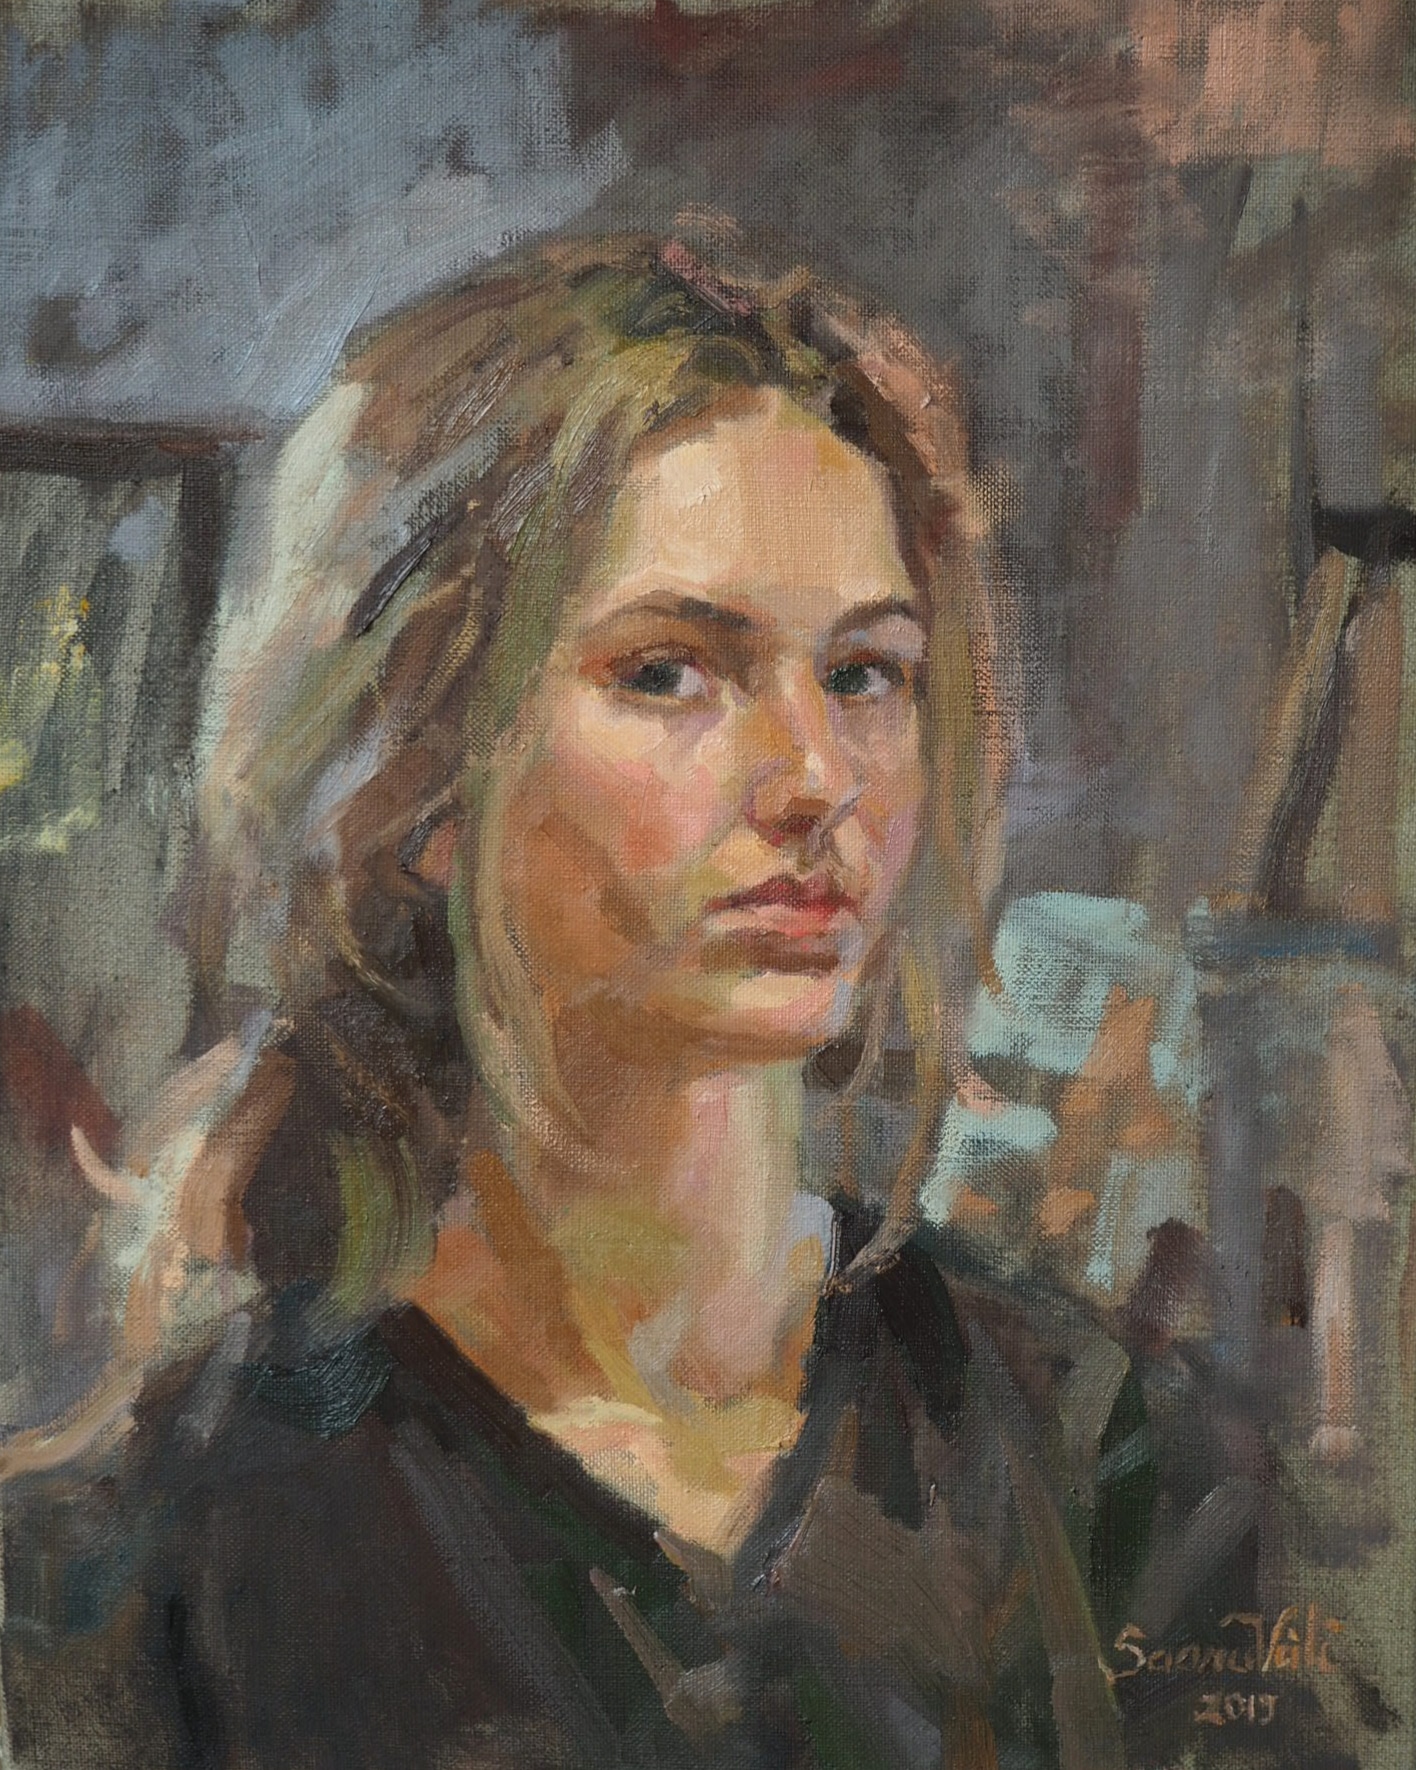 õlimaal "Autoportree" kunstnik Saara Väli realism portree